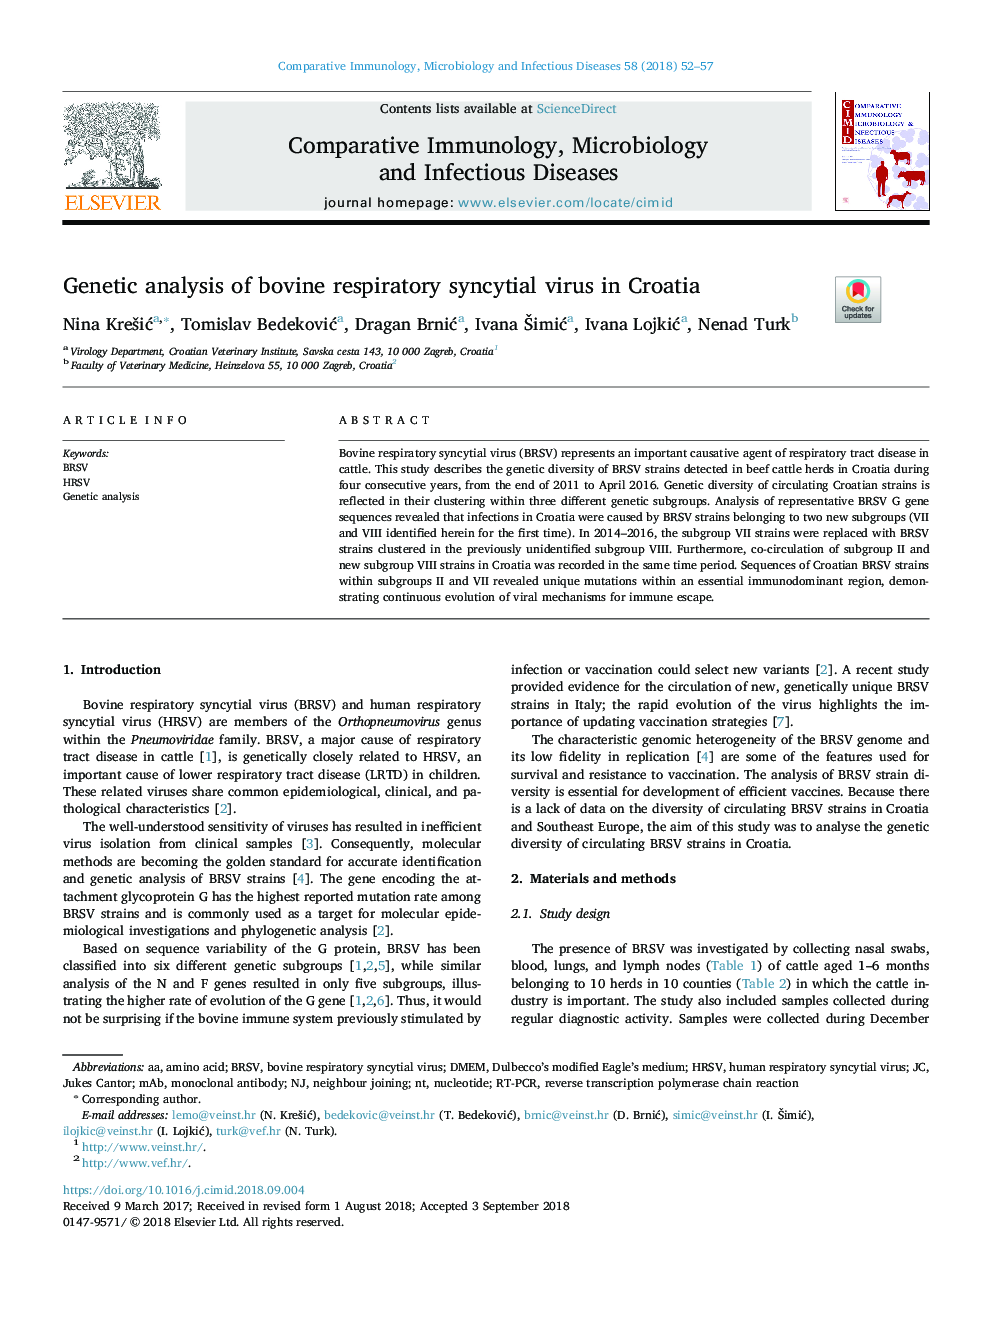 تجزیه و تحلیل ژنتیکی ویروس سونسیتیال تنفسی گاو در کرواسی